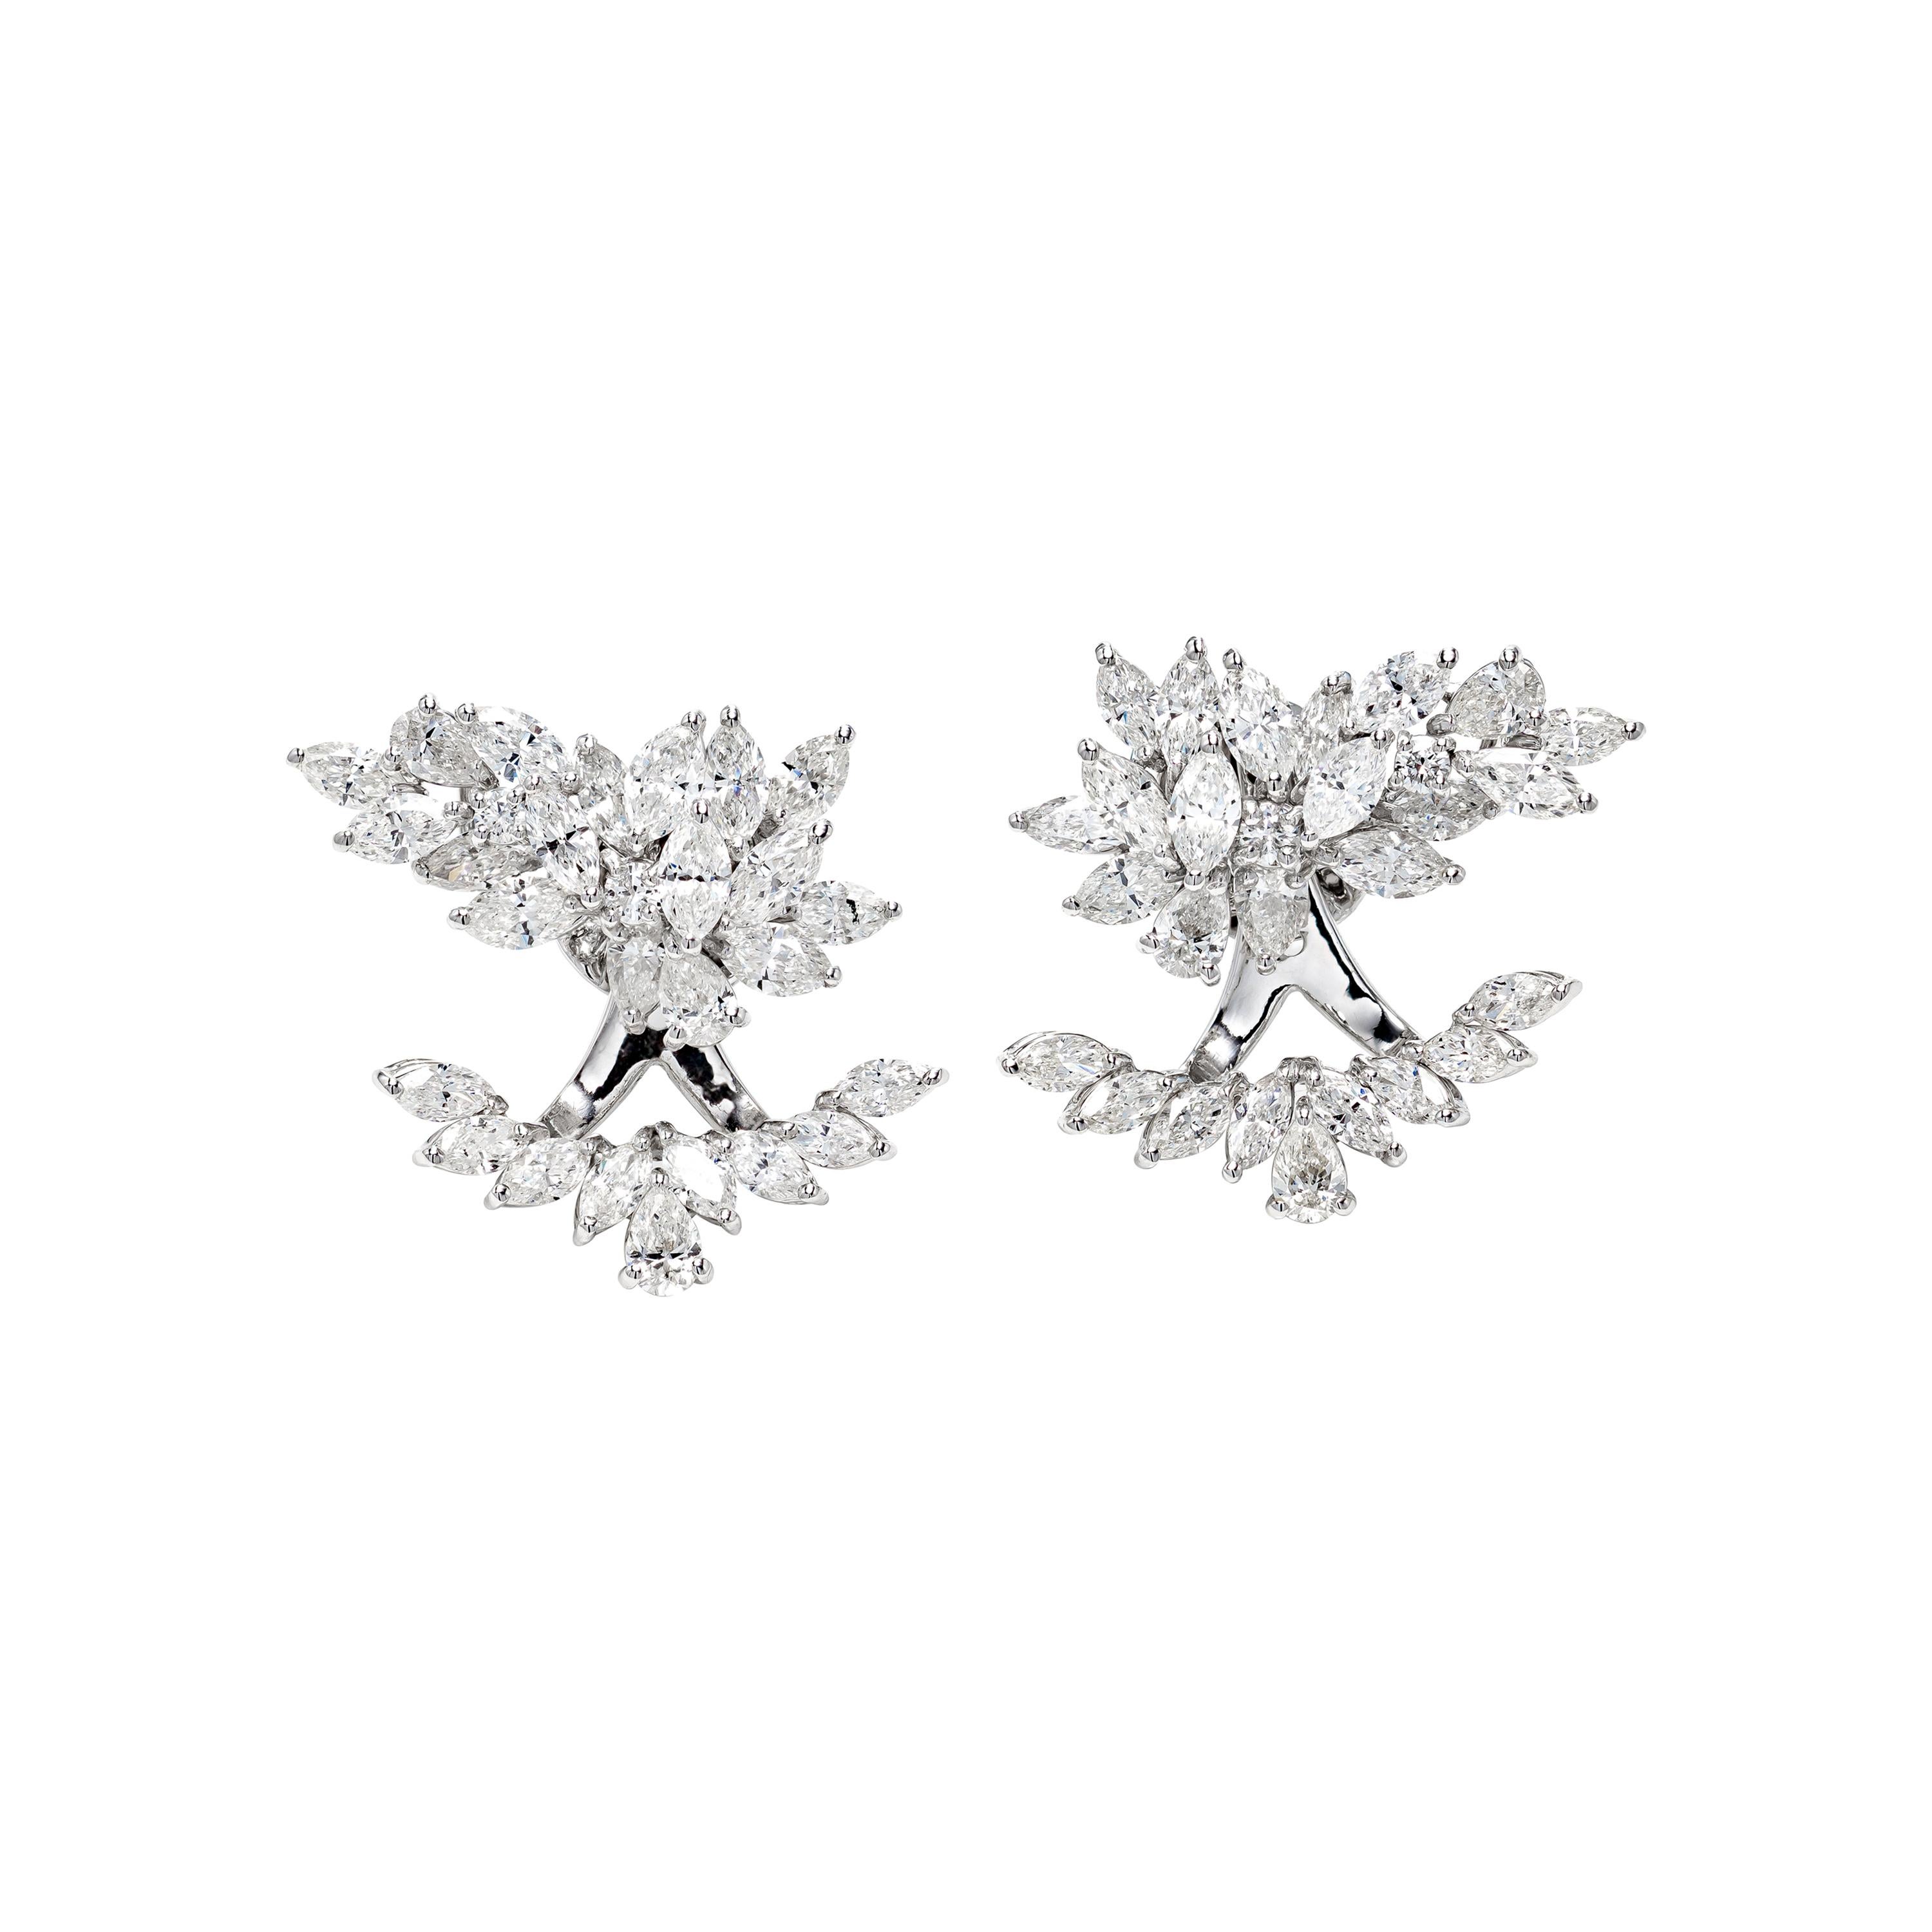 6.42 Carat Diamond Wings Ear Cuff Earrings in 18K White Gold For Sale